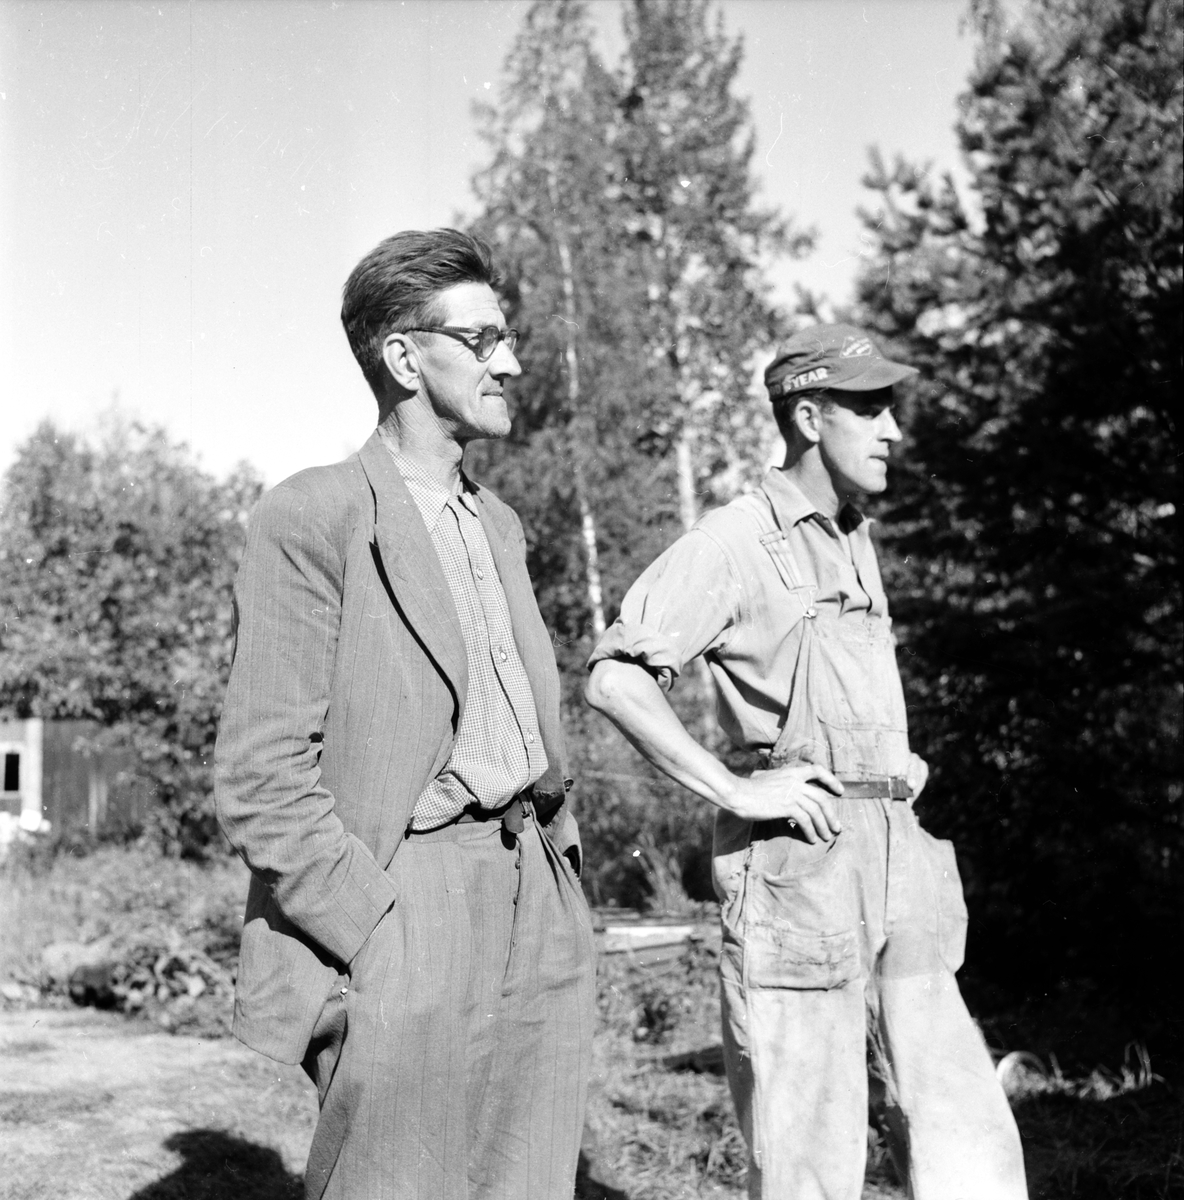 Bergman Bertil,
Åskbrand,
7 Aug 1956